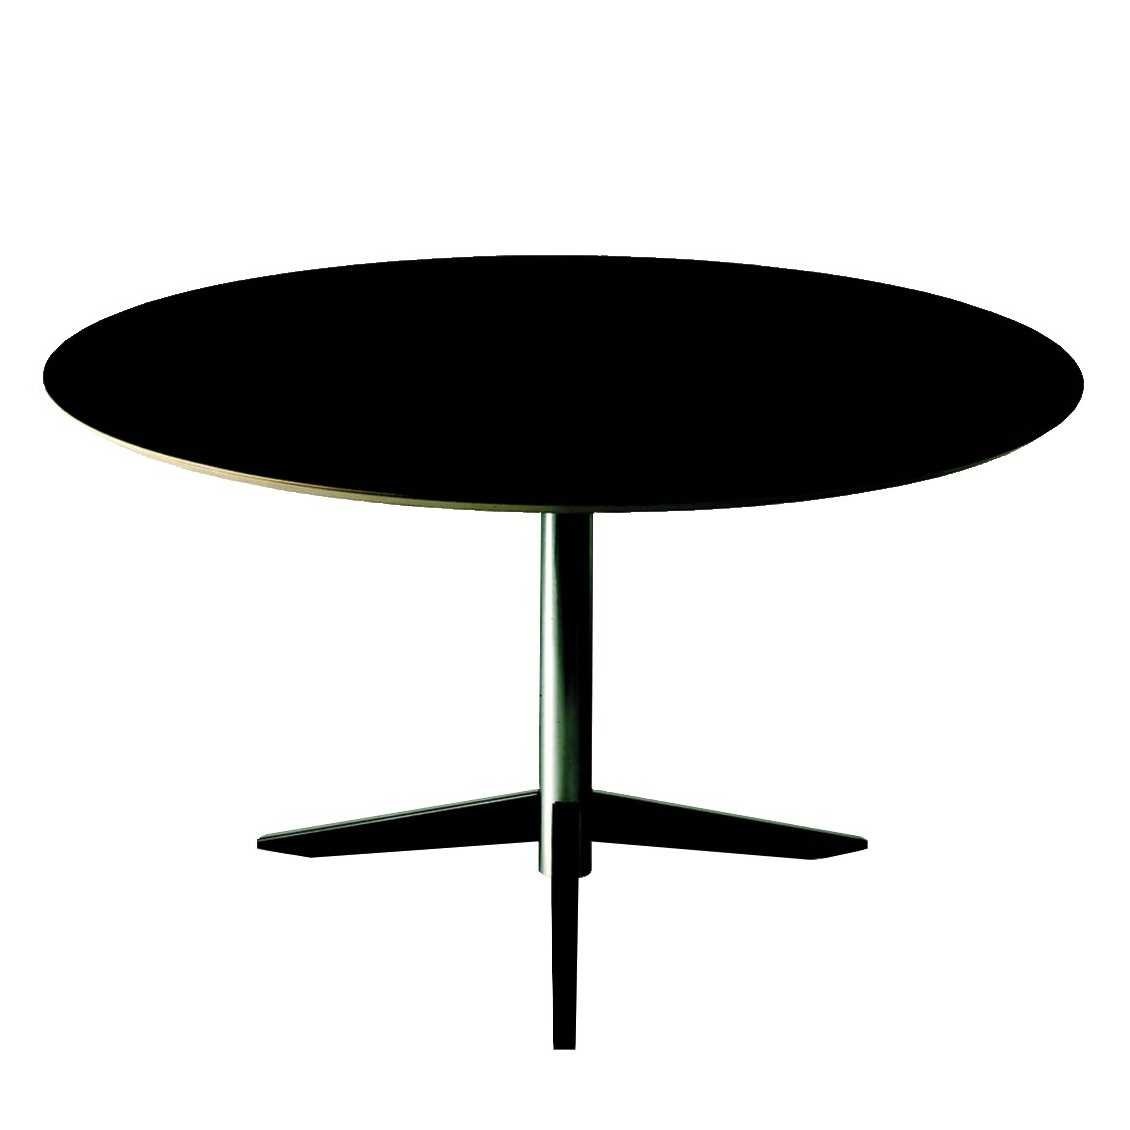 Registratie Dag Prik Spectrum TE 06 tafel Martin Visser - Ø 130 cm. - Design van Teun